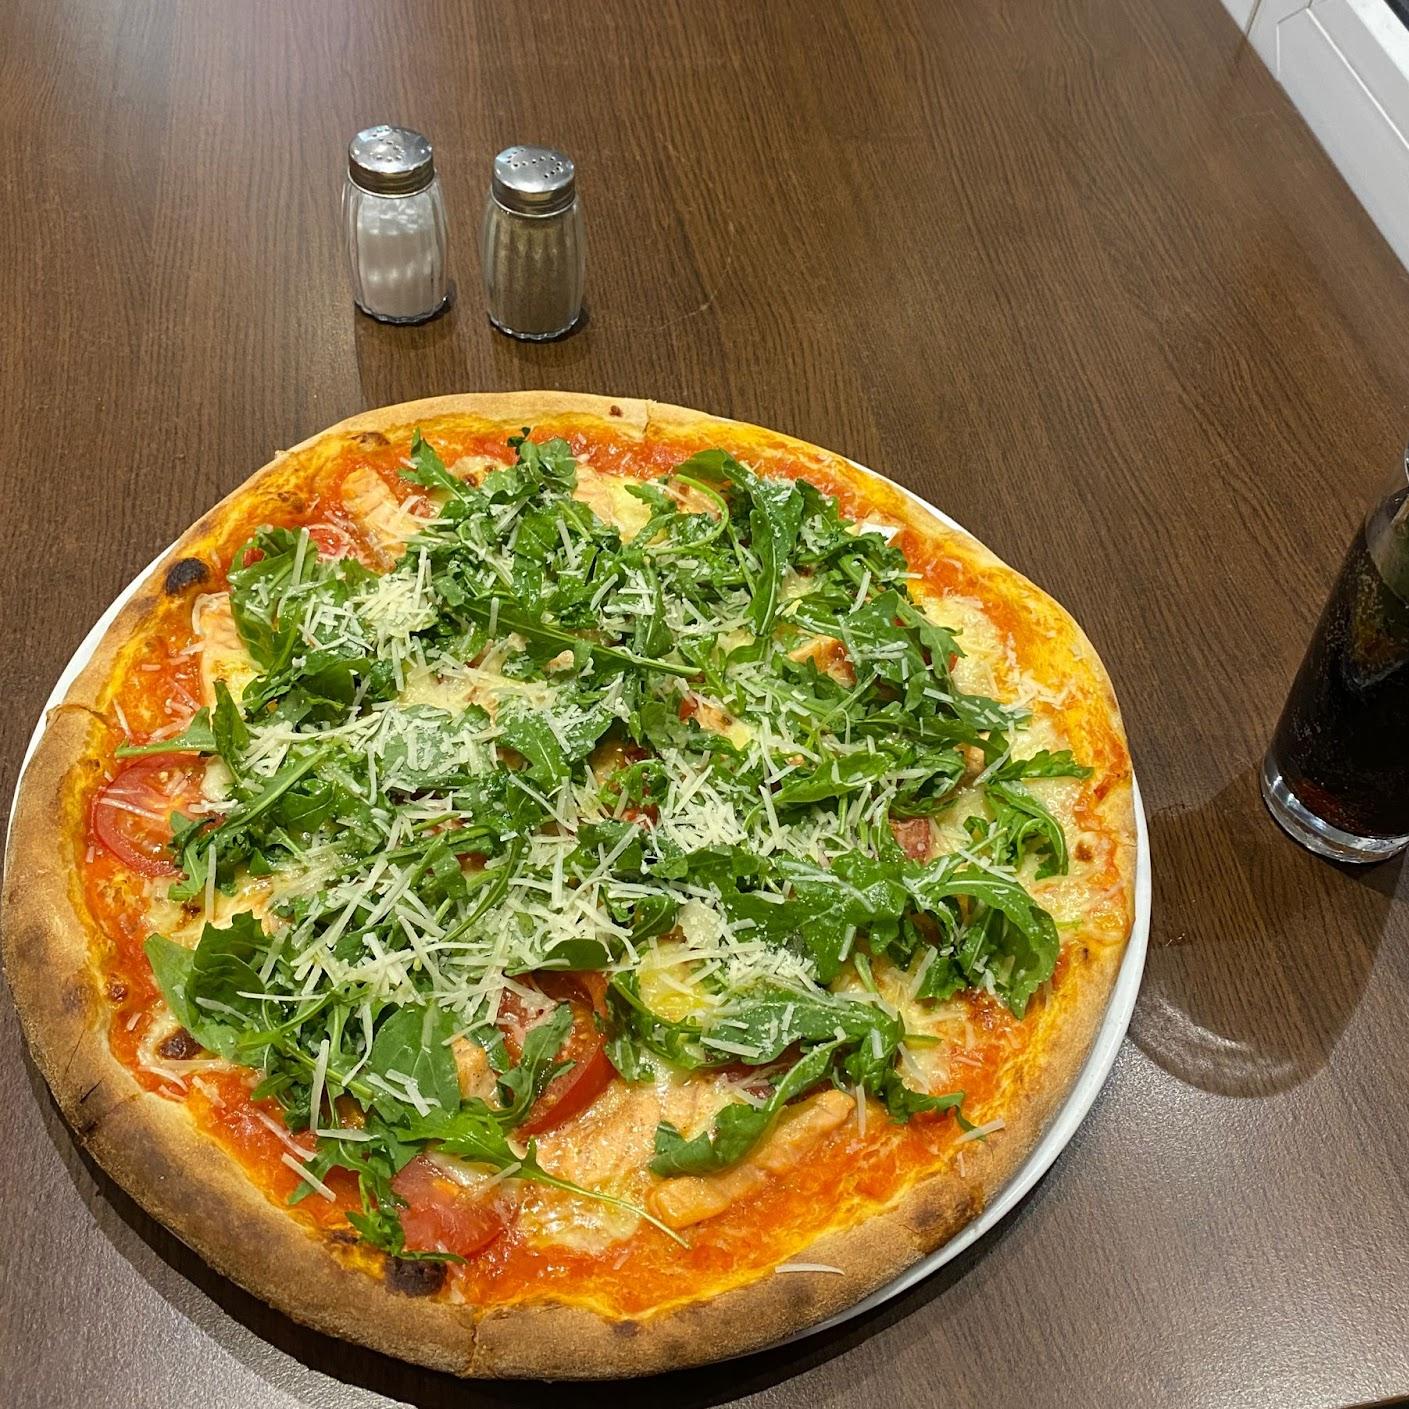 Restaurant "Pizza Castello" in Dortmund